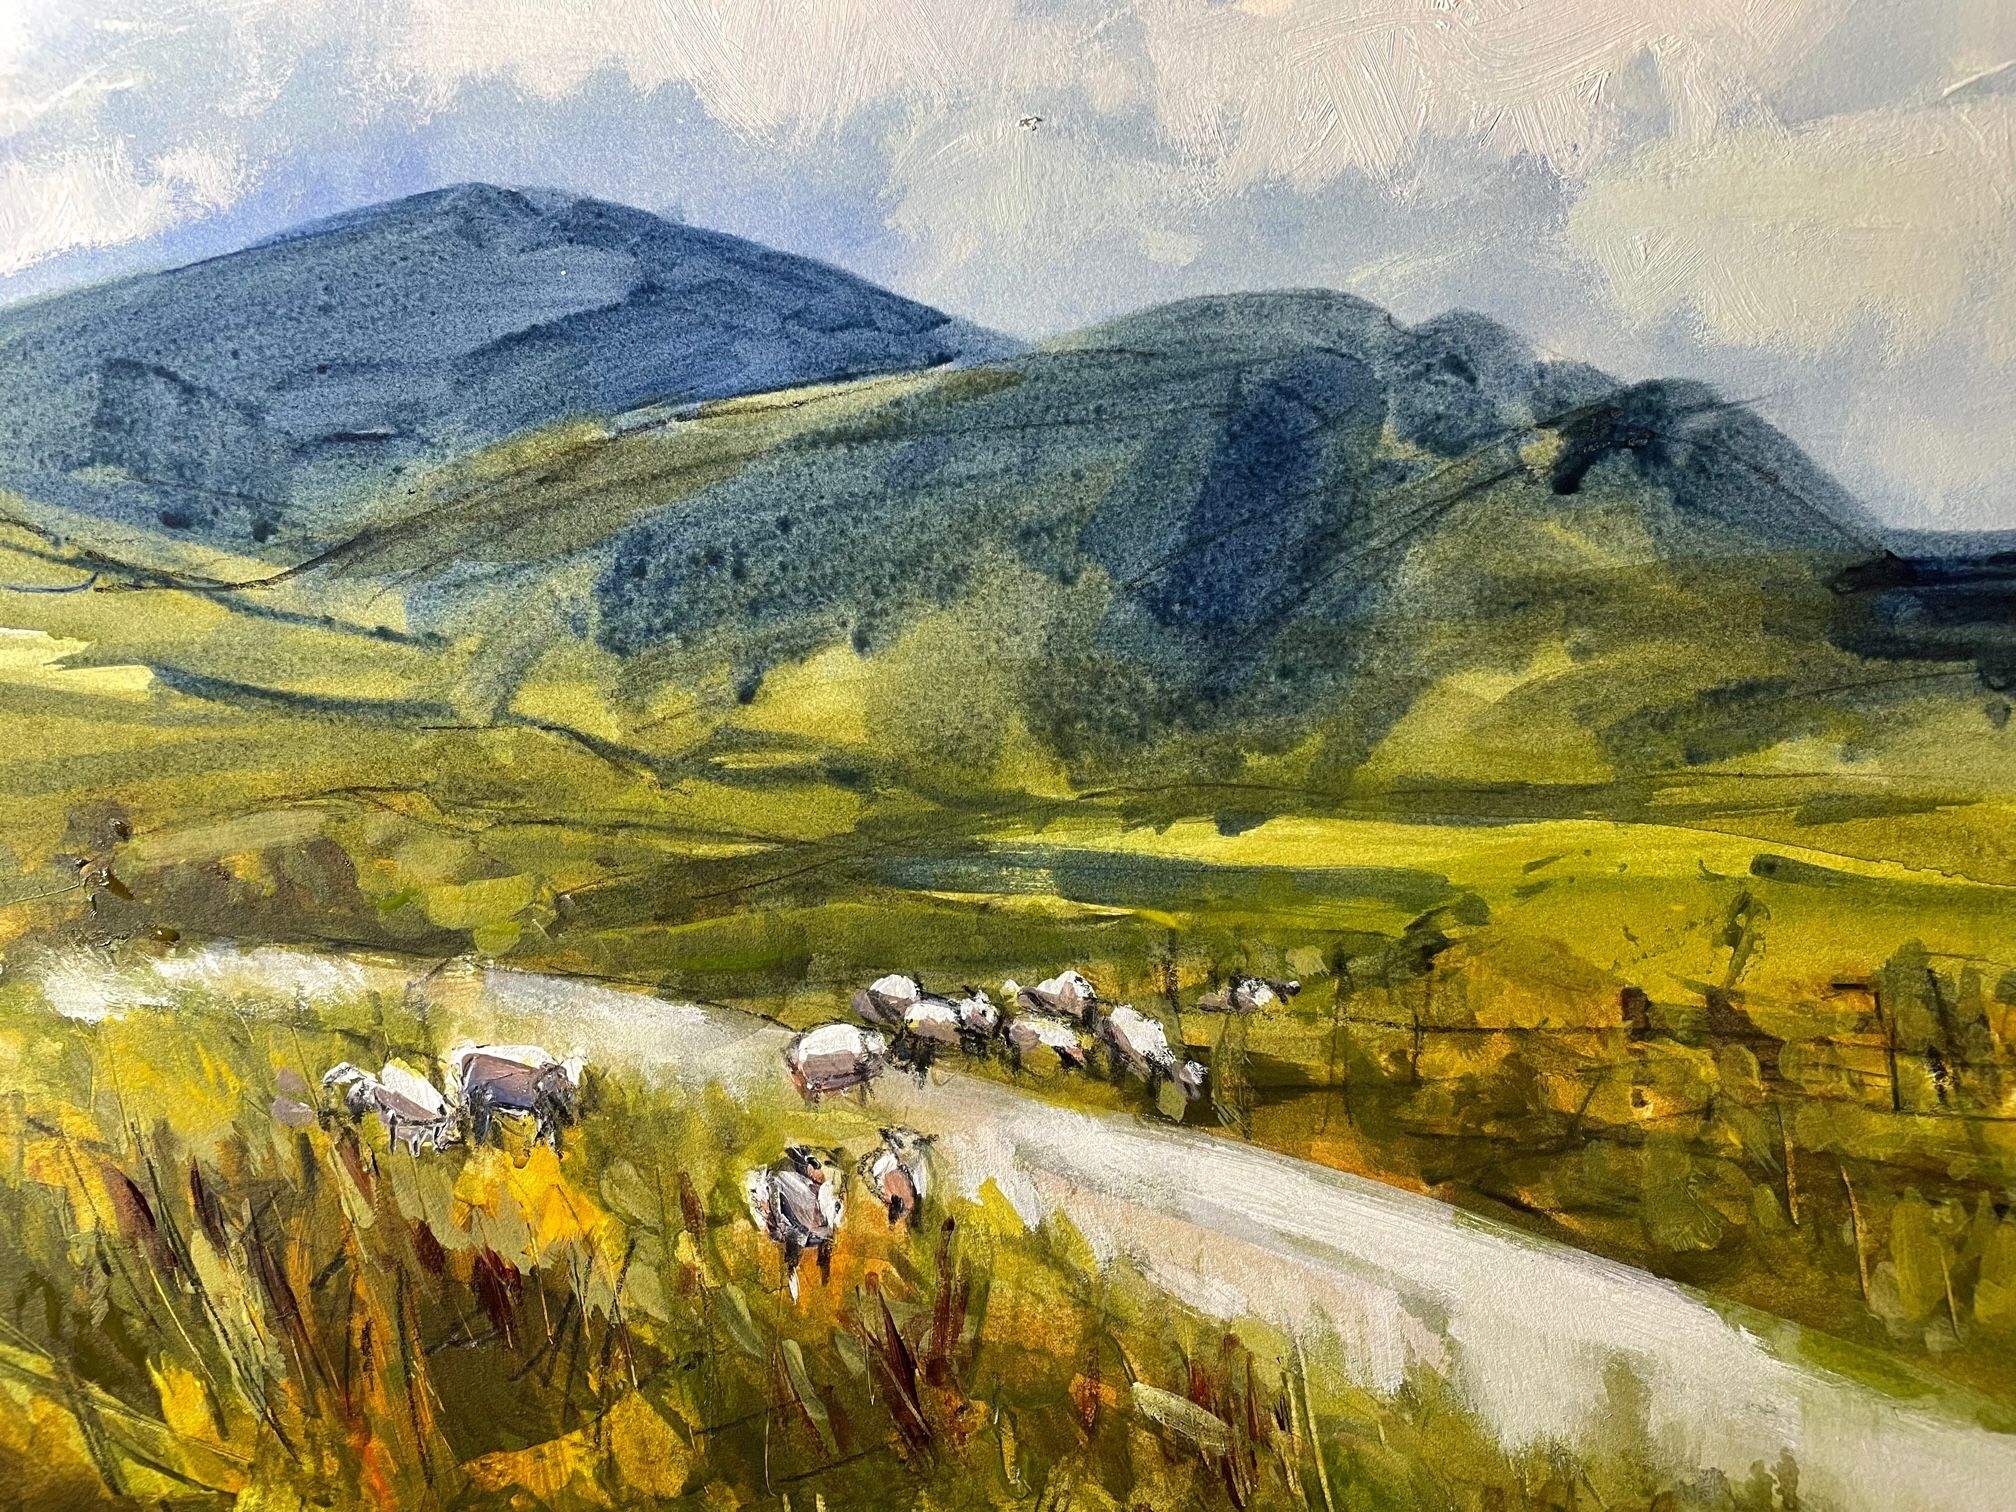 Wandering sheep, Ben Mohr by Natalie Bird